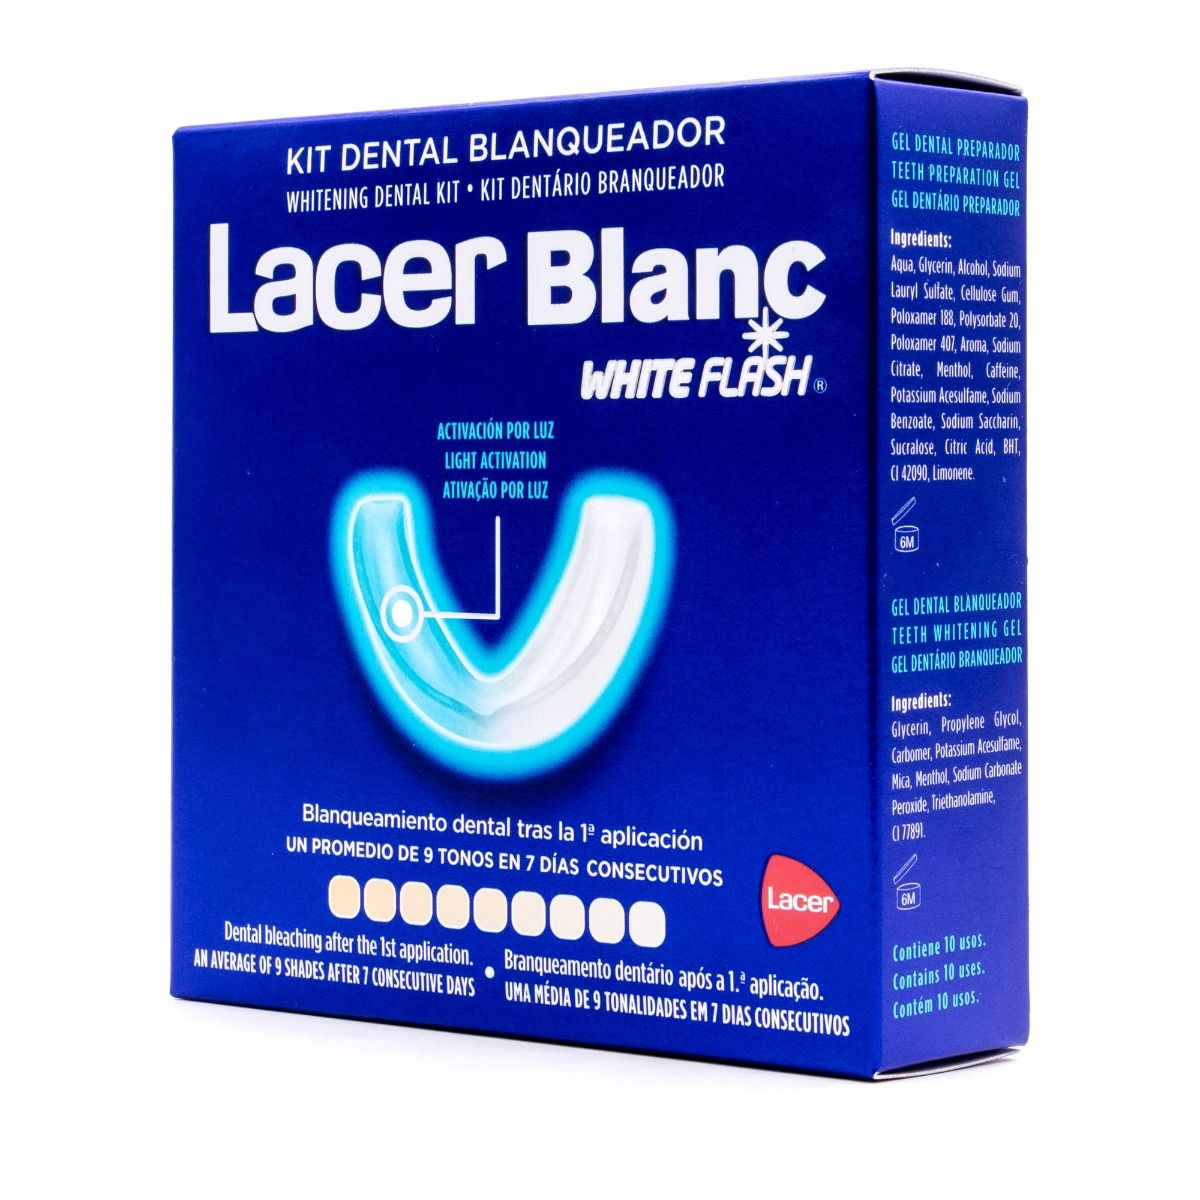 Farmacia Santo Domingo - Lacer Blanc White Flash Kit Blanqueador de efecto  inmediato para dientes visiblemente más blancos, llévate de REGALO un  mochila por la compra de 1 kit #Lacer #Dental #Regalo #